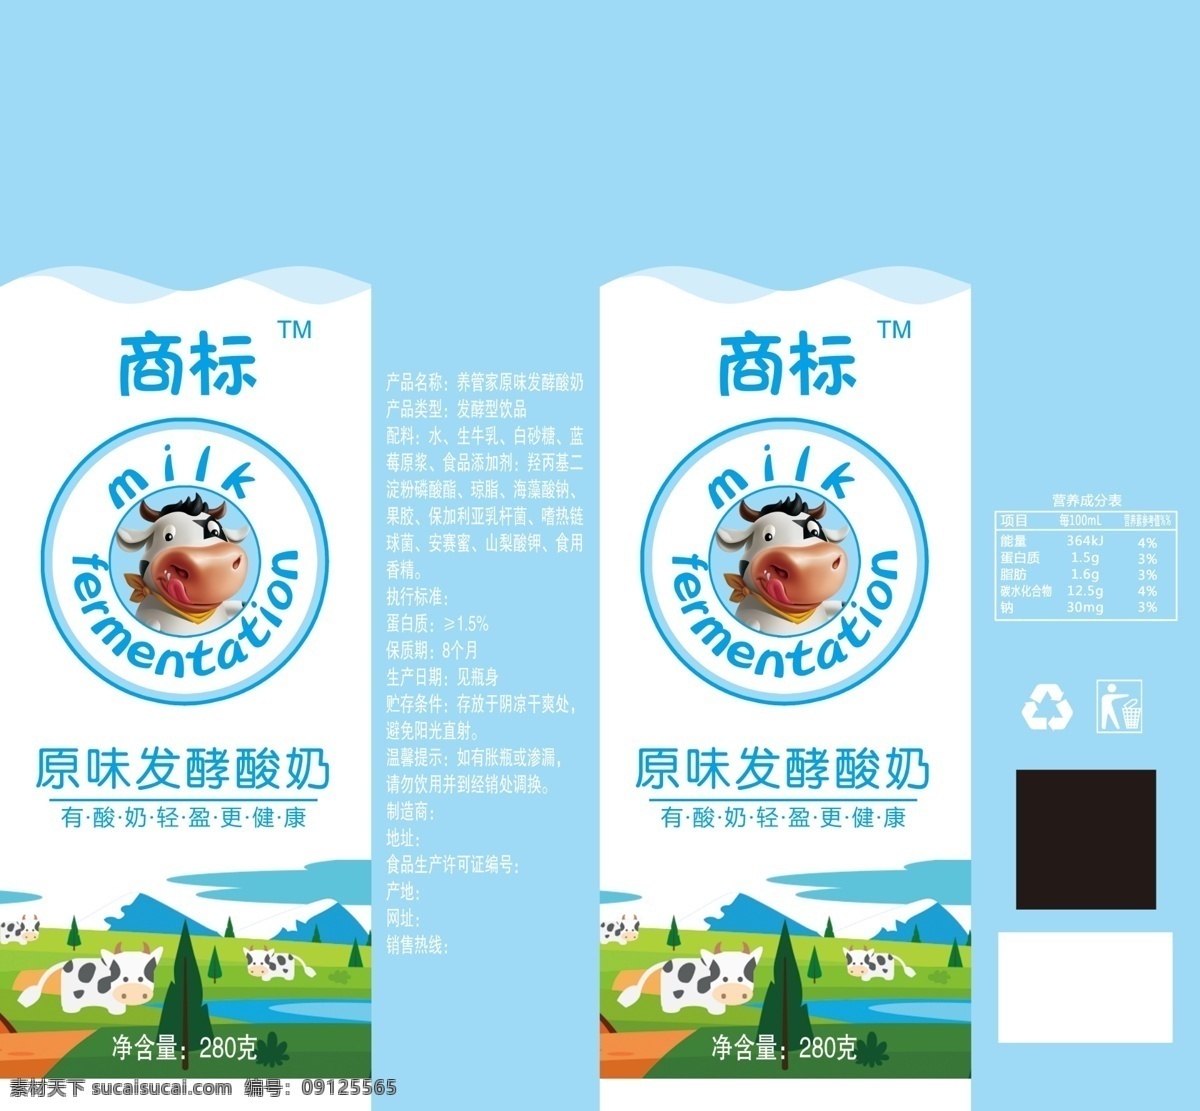 发酵酸奶 酸奶 奶包装 奶牛 卡通牛 饮料包装 包装设计